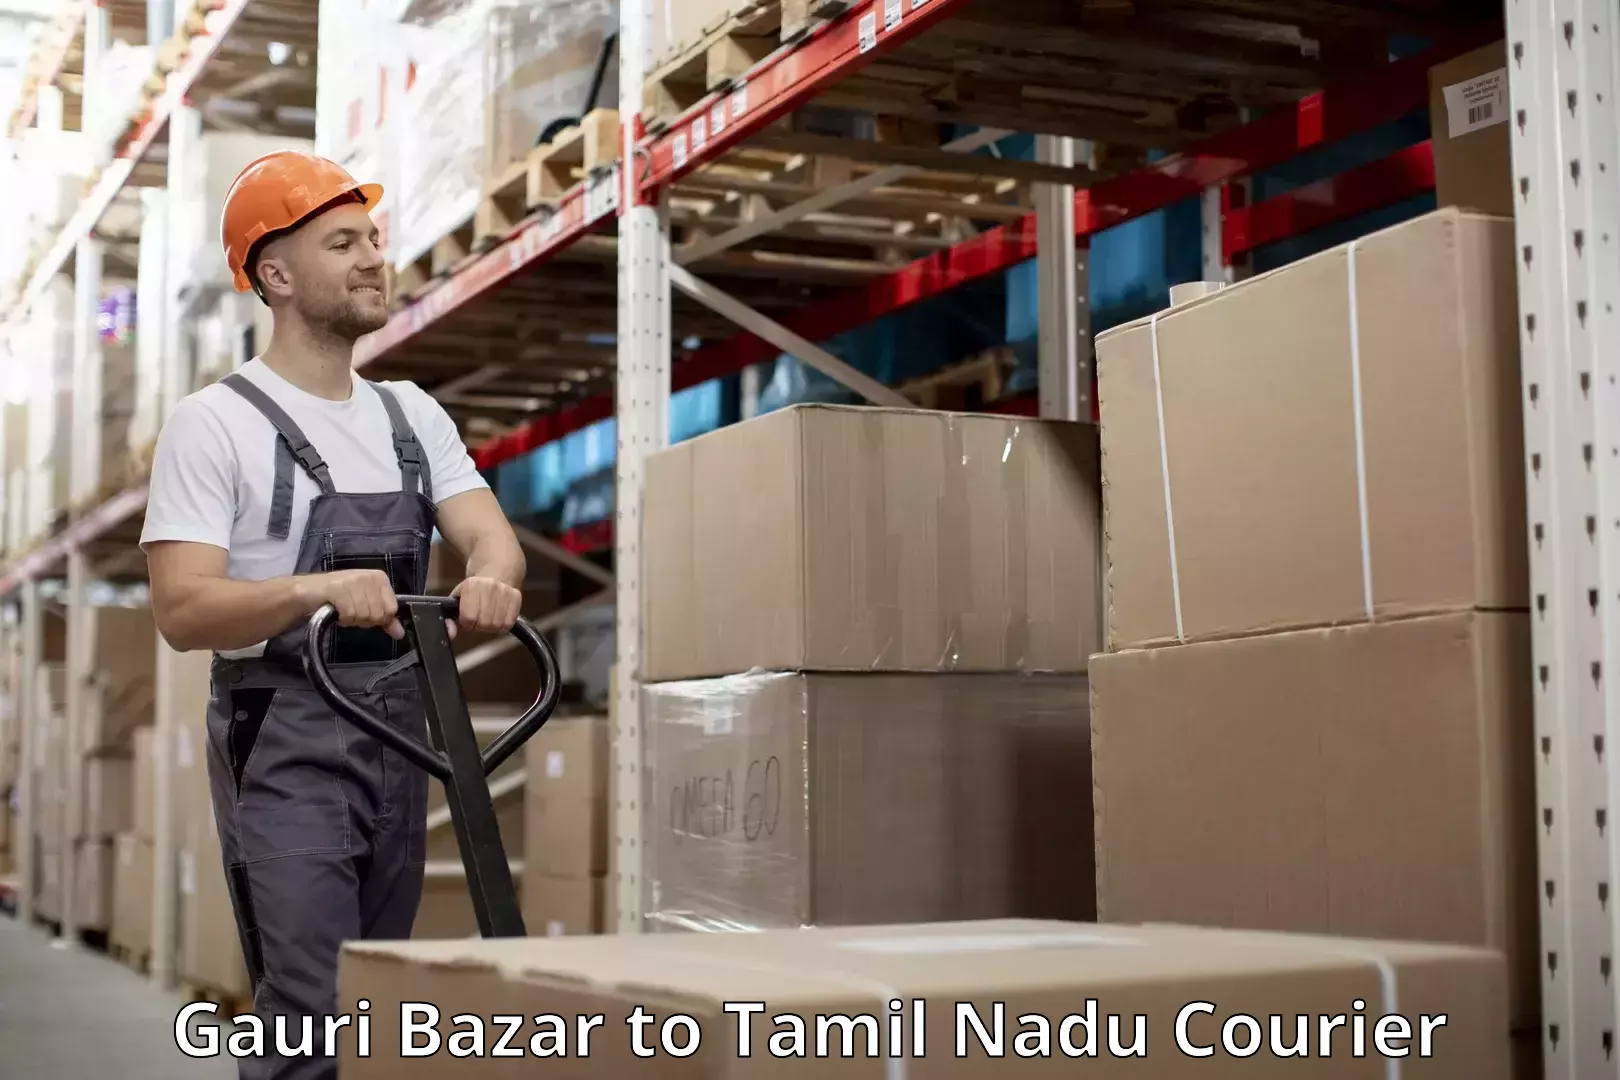 Luggage transport consultancy Gauri Bazar to Tamil Nadu